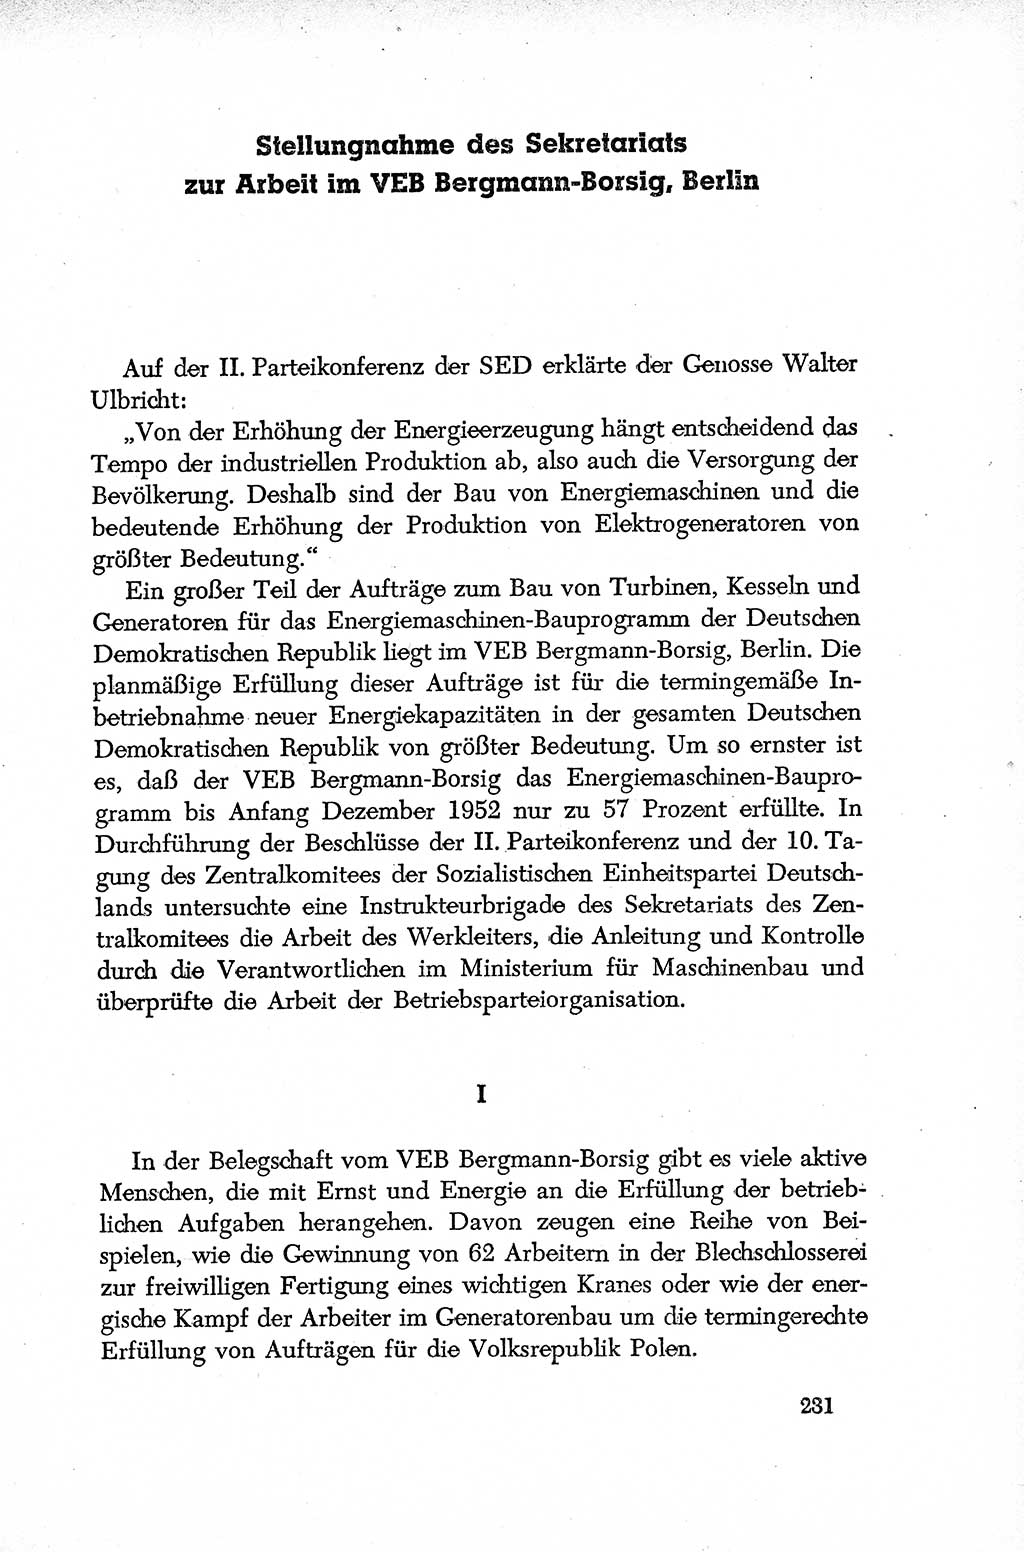 Dokumente der Sozialistischen Einheitspartei Deutschlands (SED) [Deutsche Demokratische Republik (DDR)] 1952-1953, Seite 231 (Dok. SED DDR 1952-1953, S. 231)